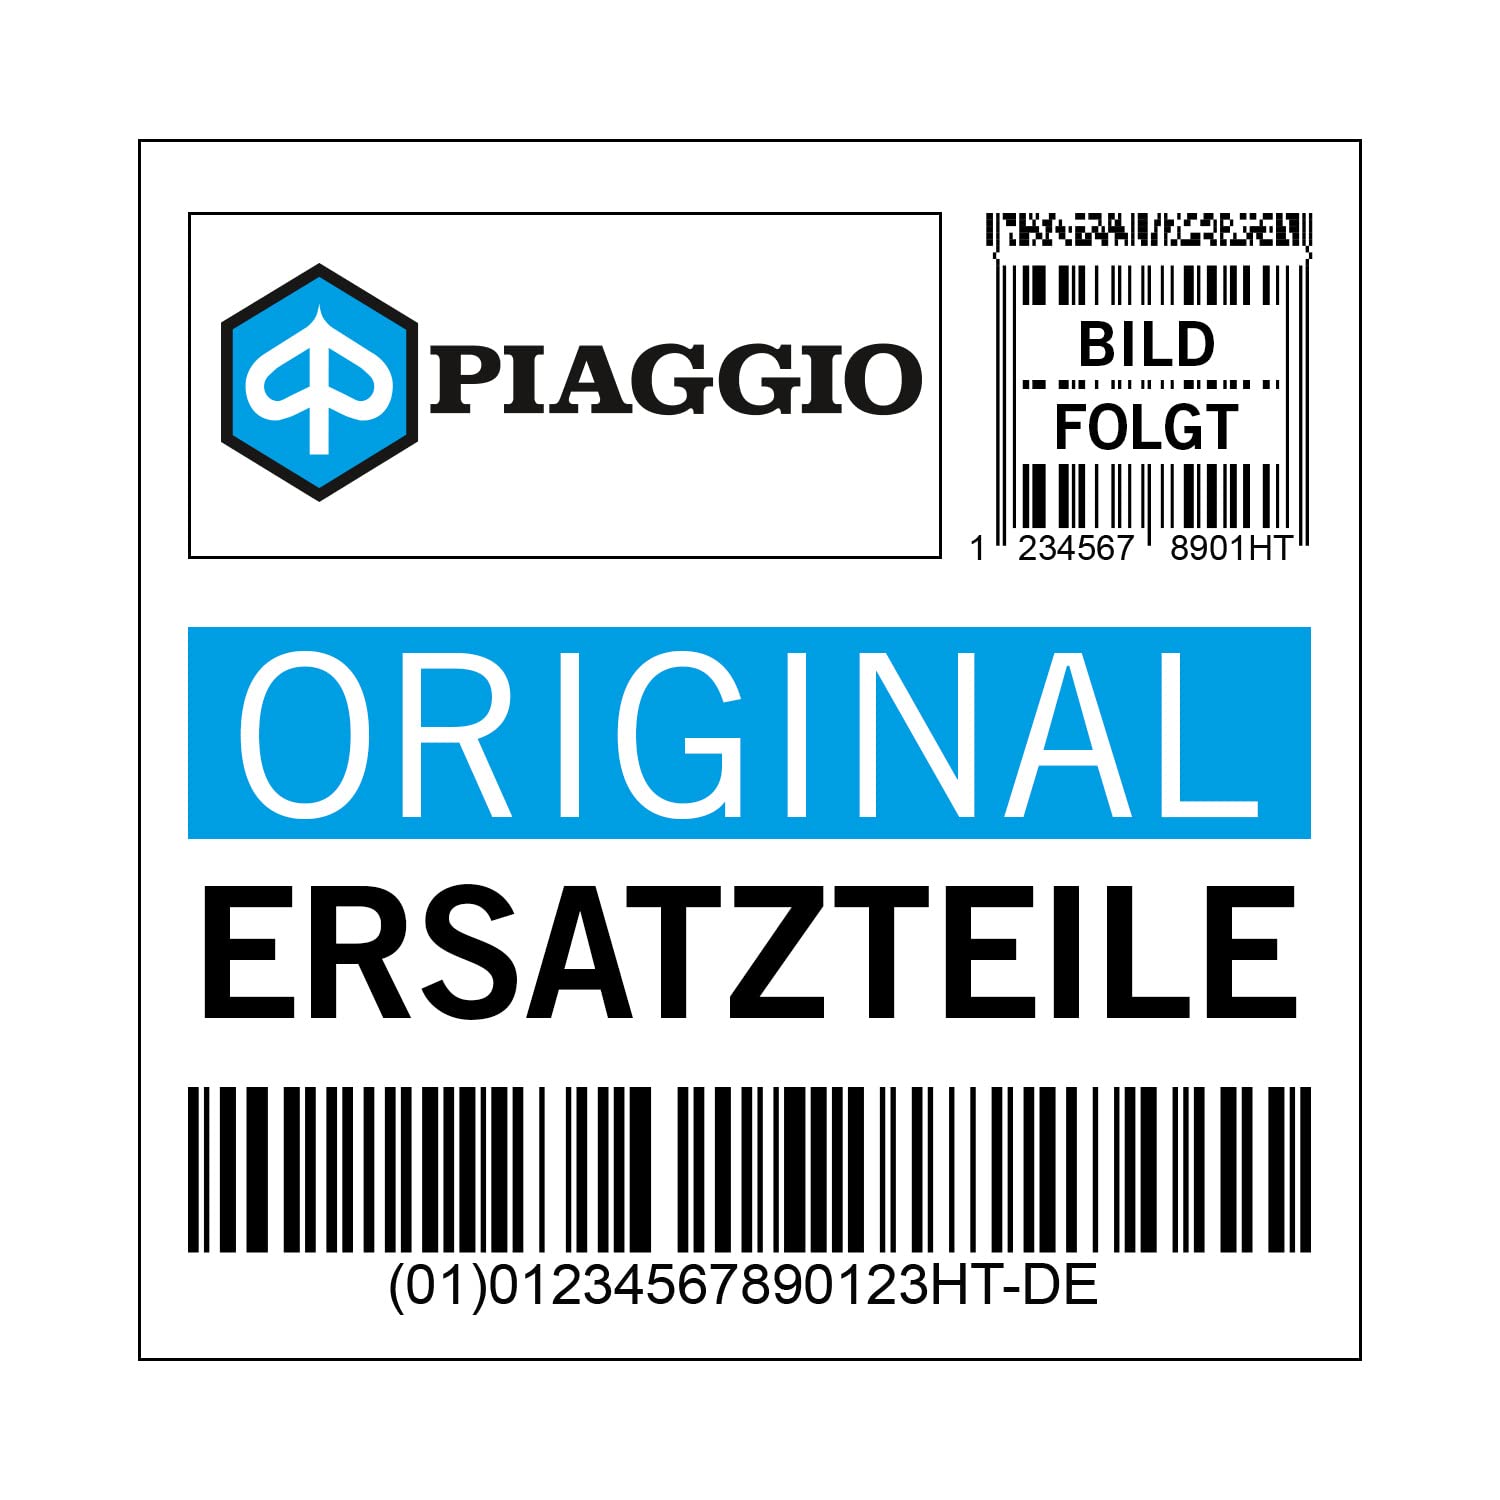 Abdeckung Piaggio Kabelführung, 2B005291 von Maxtuned